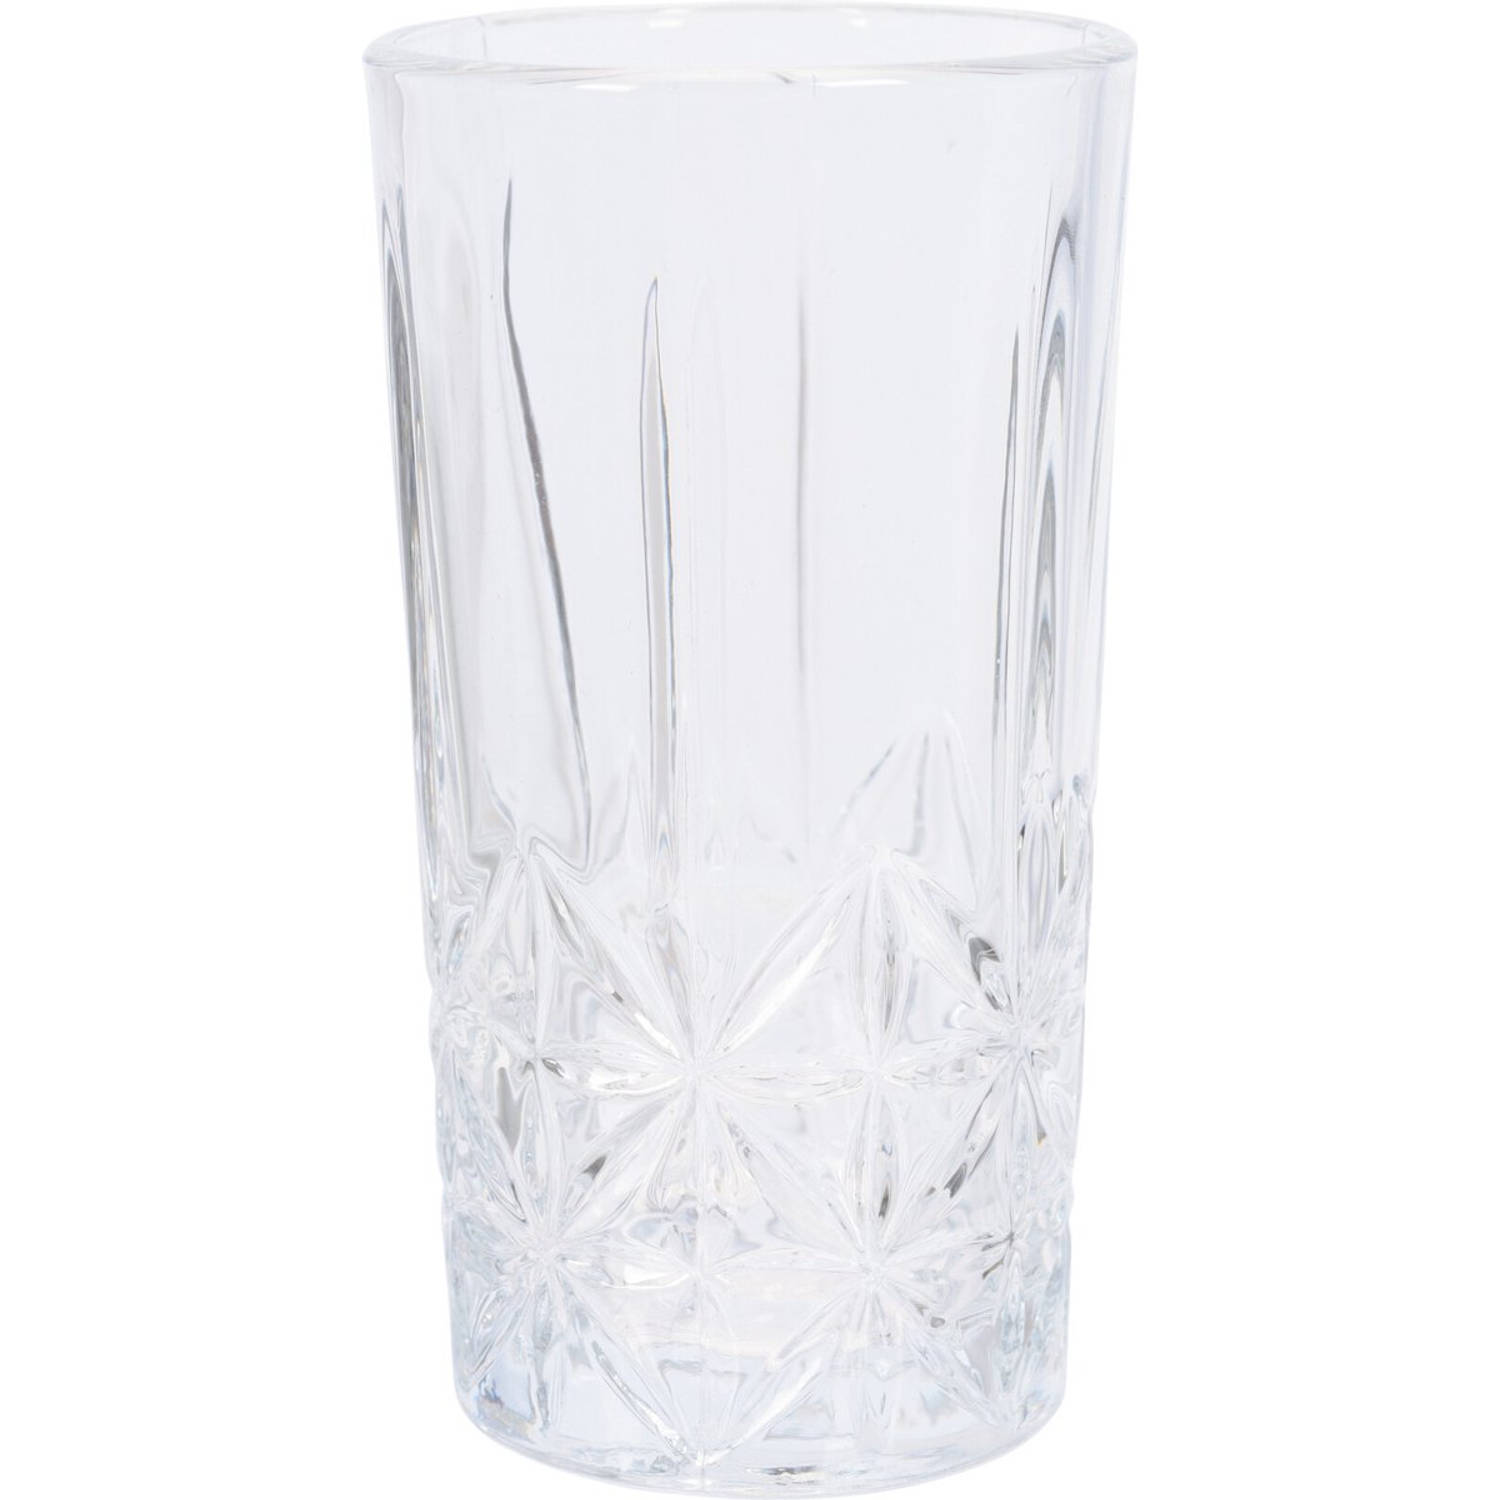 Jap Kristallen Longdrinkglazen Set Van 4 260ml Drinkglas Transparant